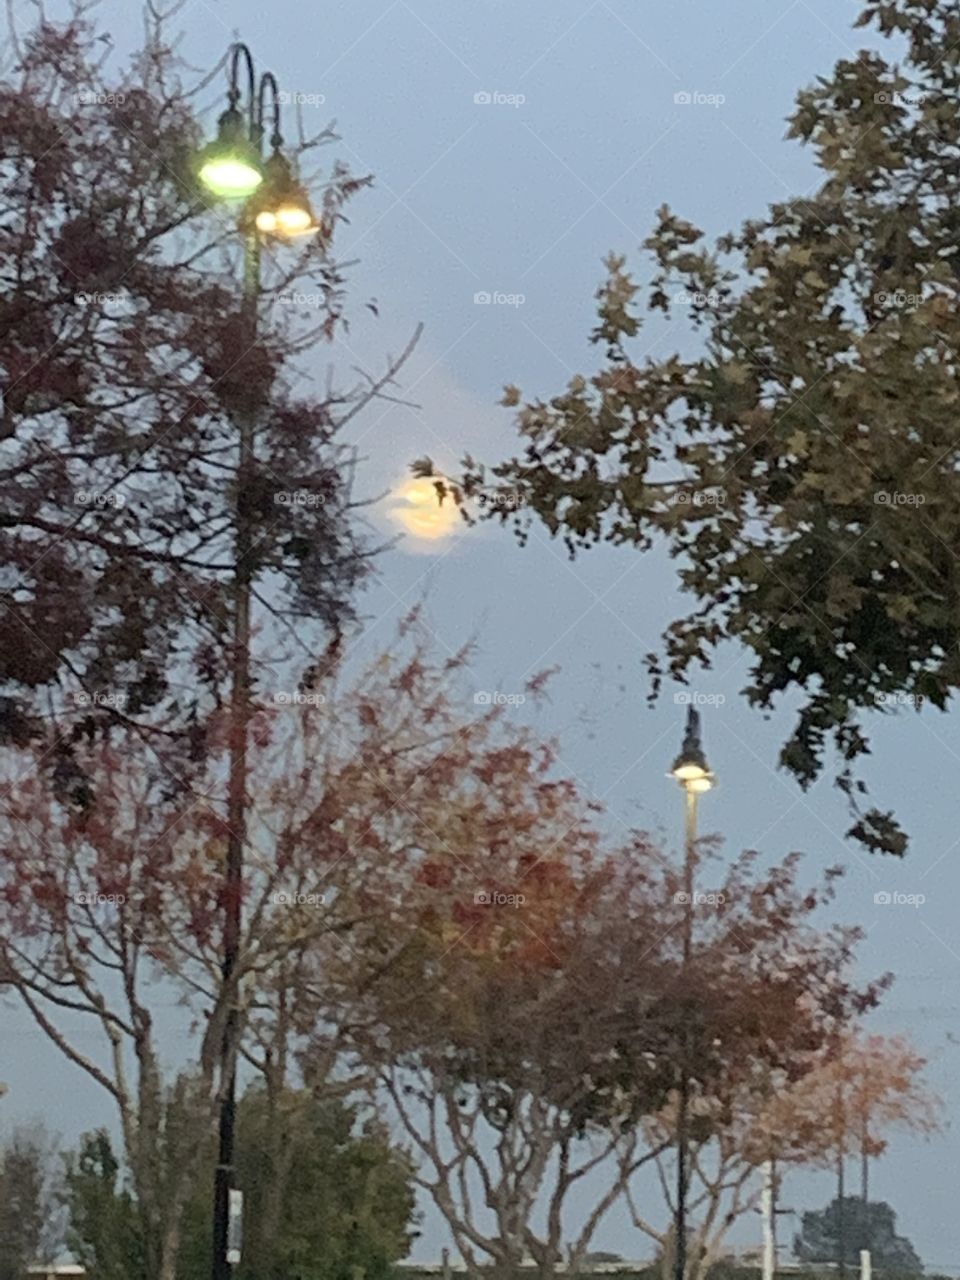 Moon peeking up behind the trees